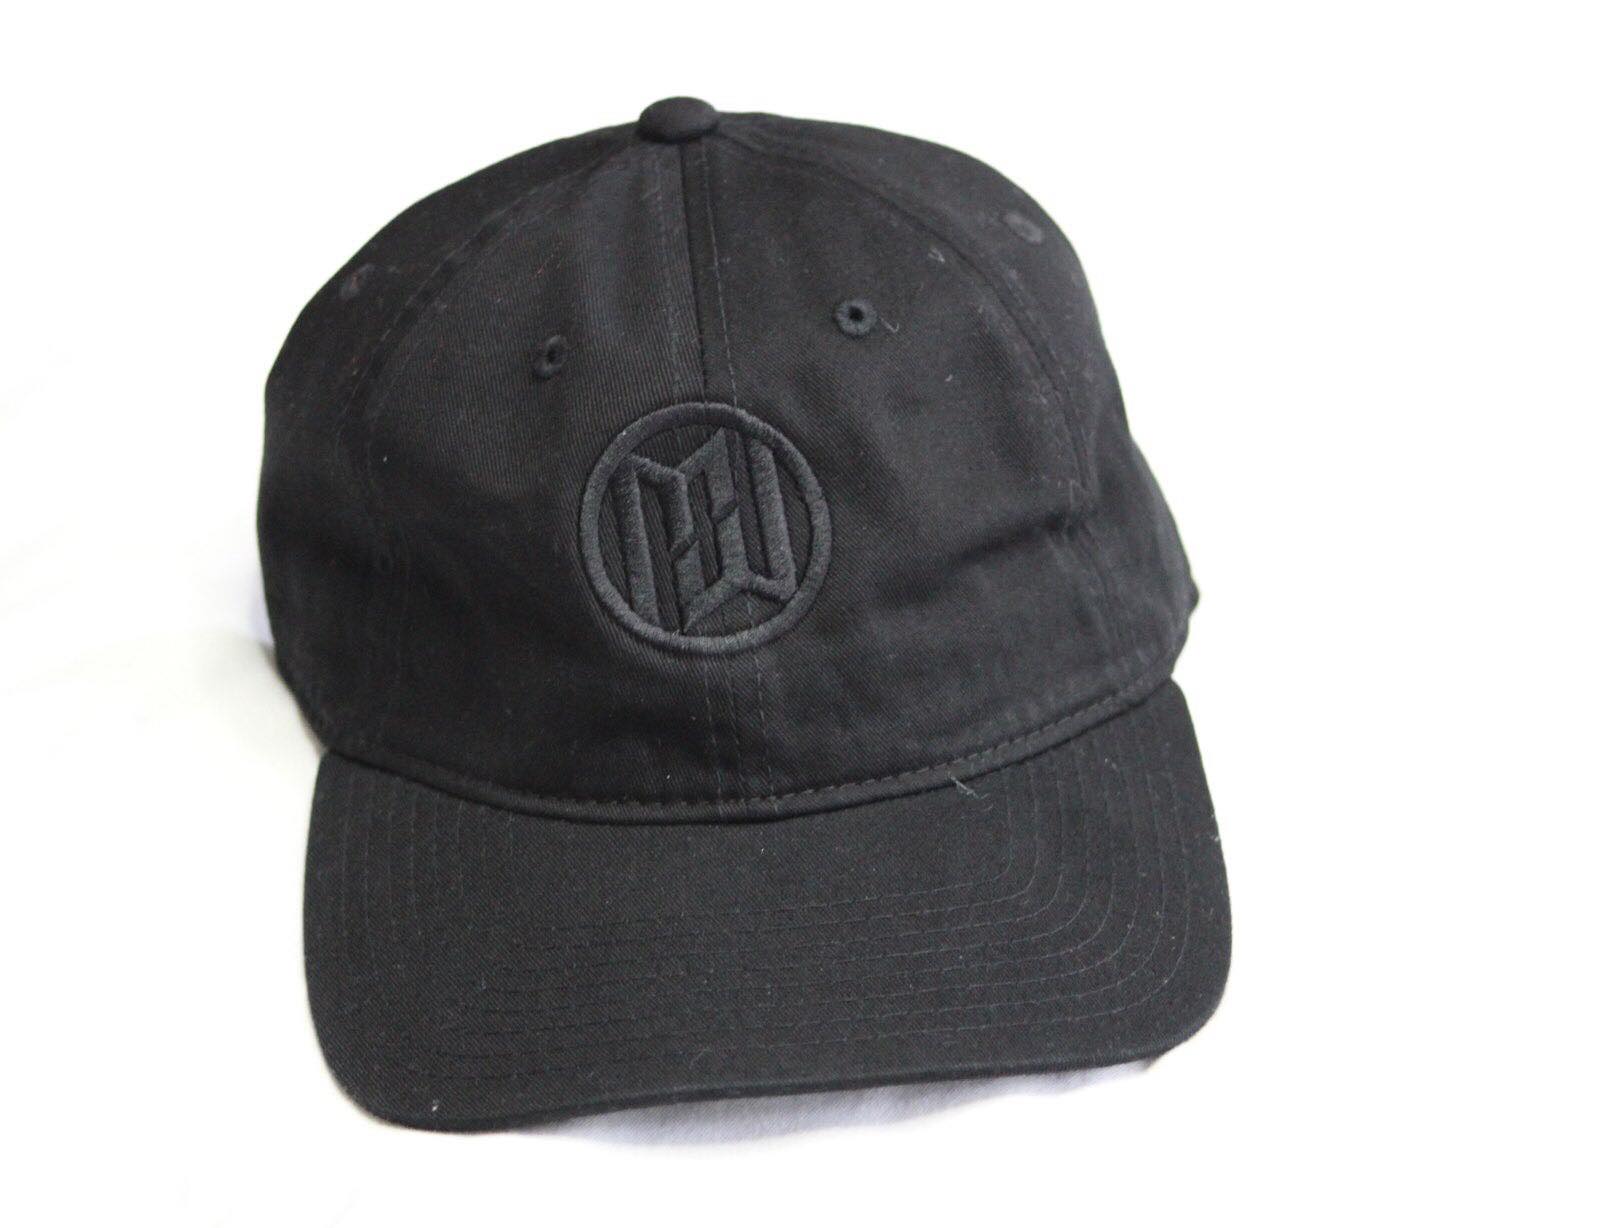 Minimum Wage Clothing Hat - Black Logo On Black